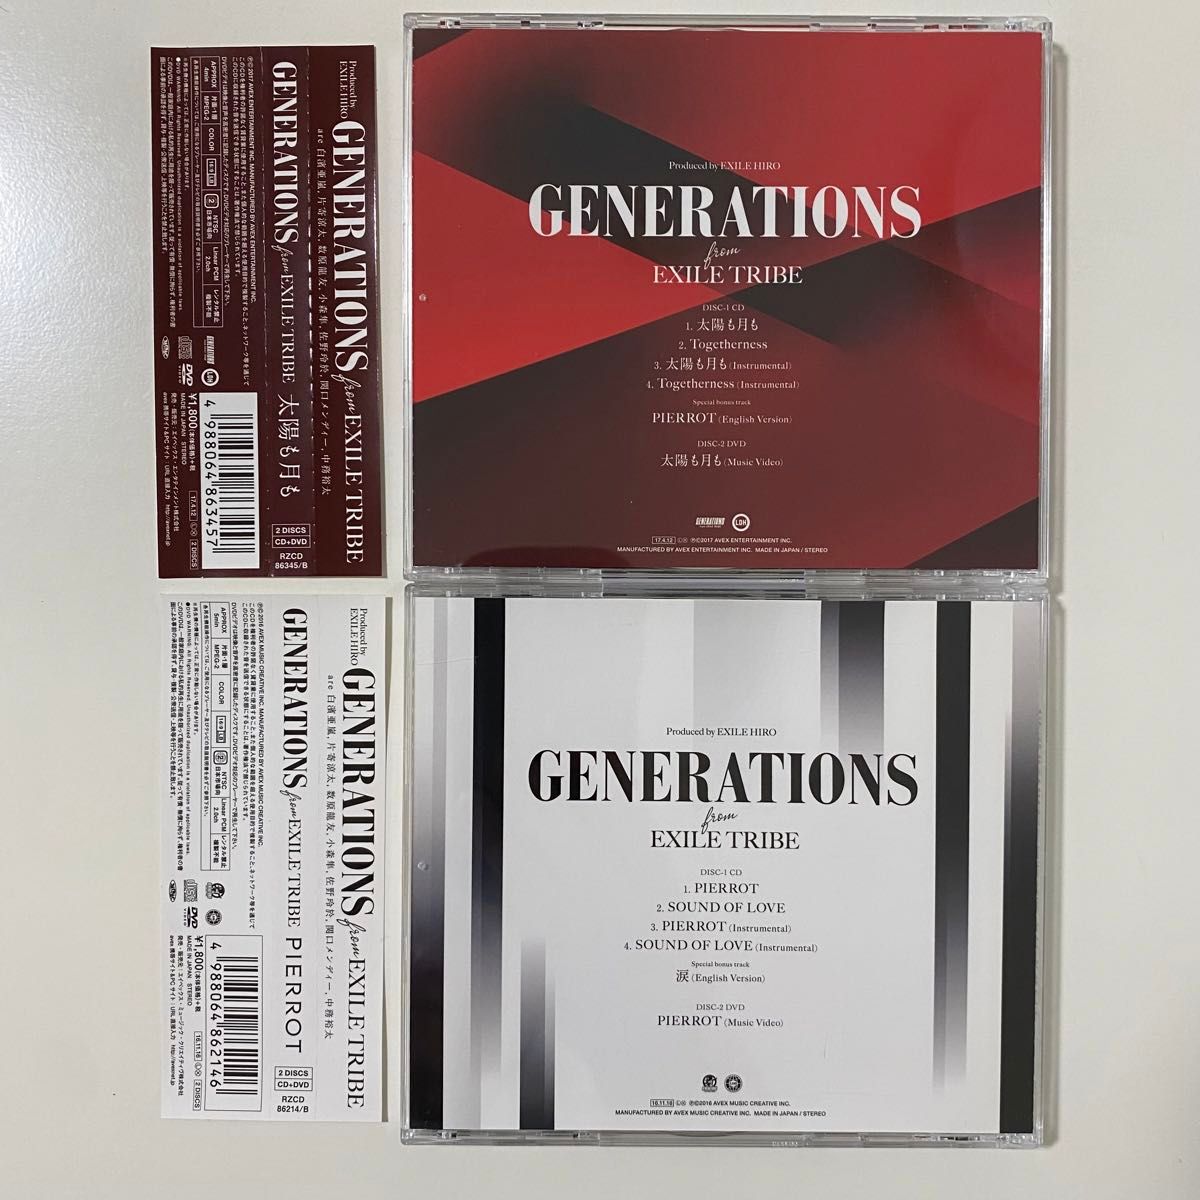 ［国内盤］GENERATIONS from EXILE TRIBE 太陽も月も PIERROT CD+DVD セル版 まとめ売り